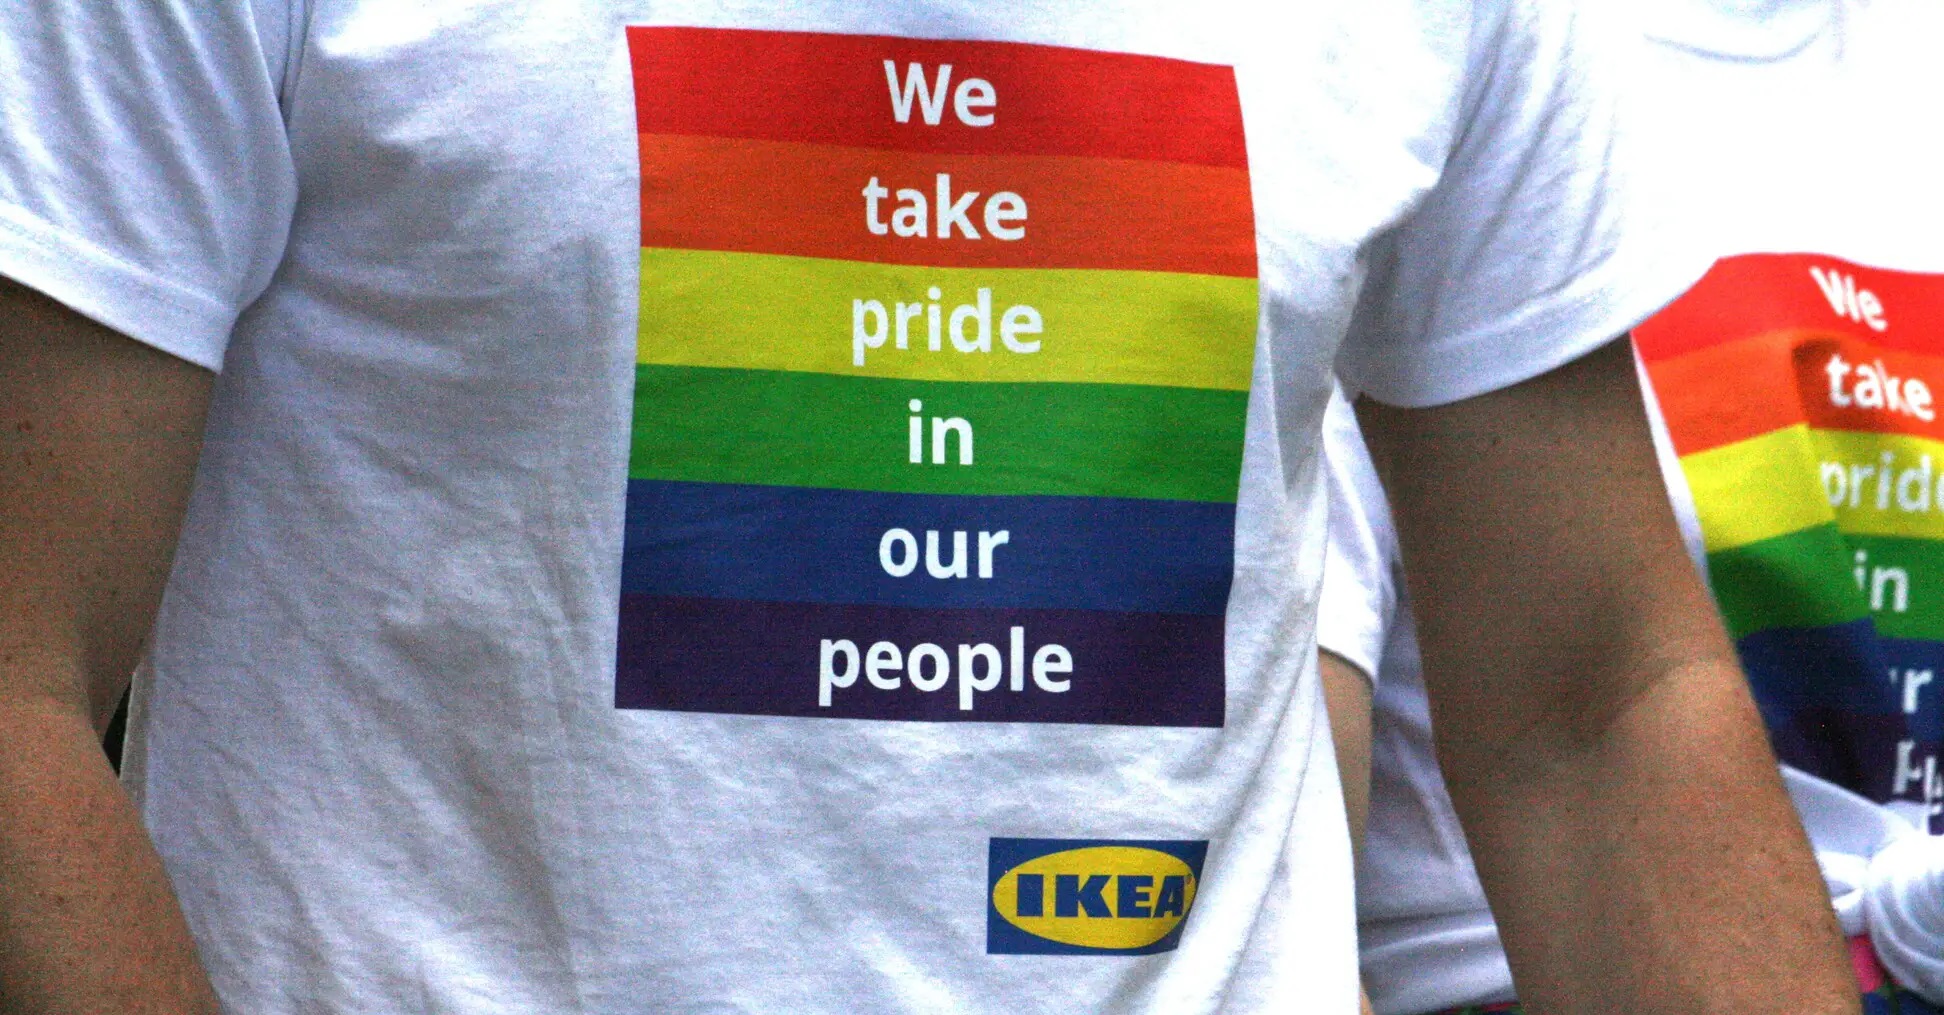 Sąd nakazuje IKEA przywrócenie do pracy polskiego pracownika zwolnionego z powodu homofobii